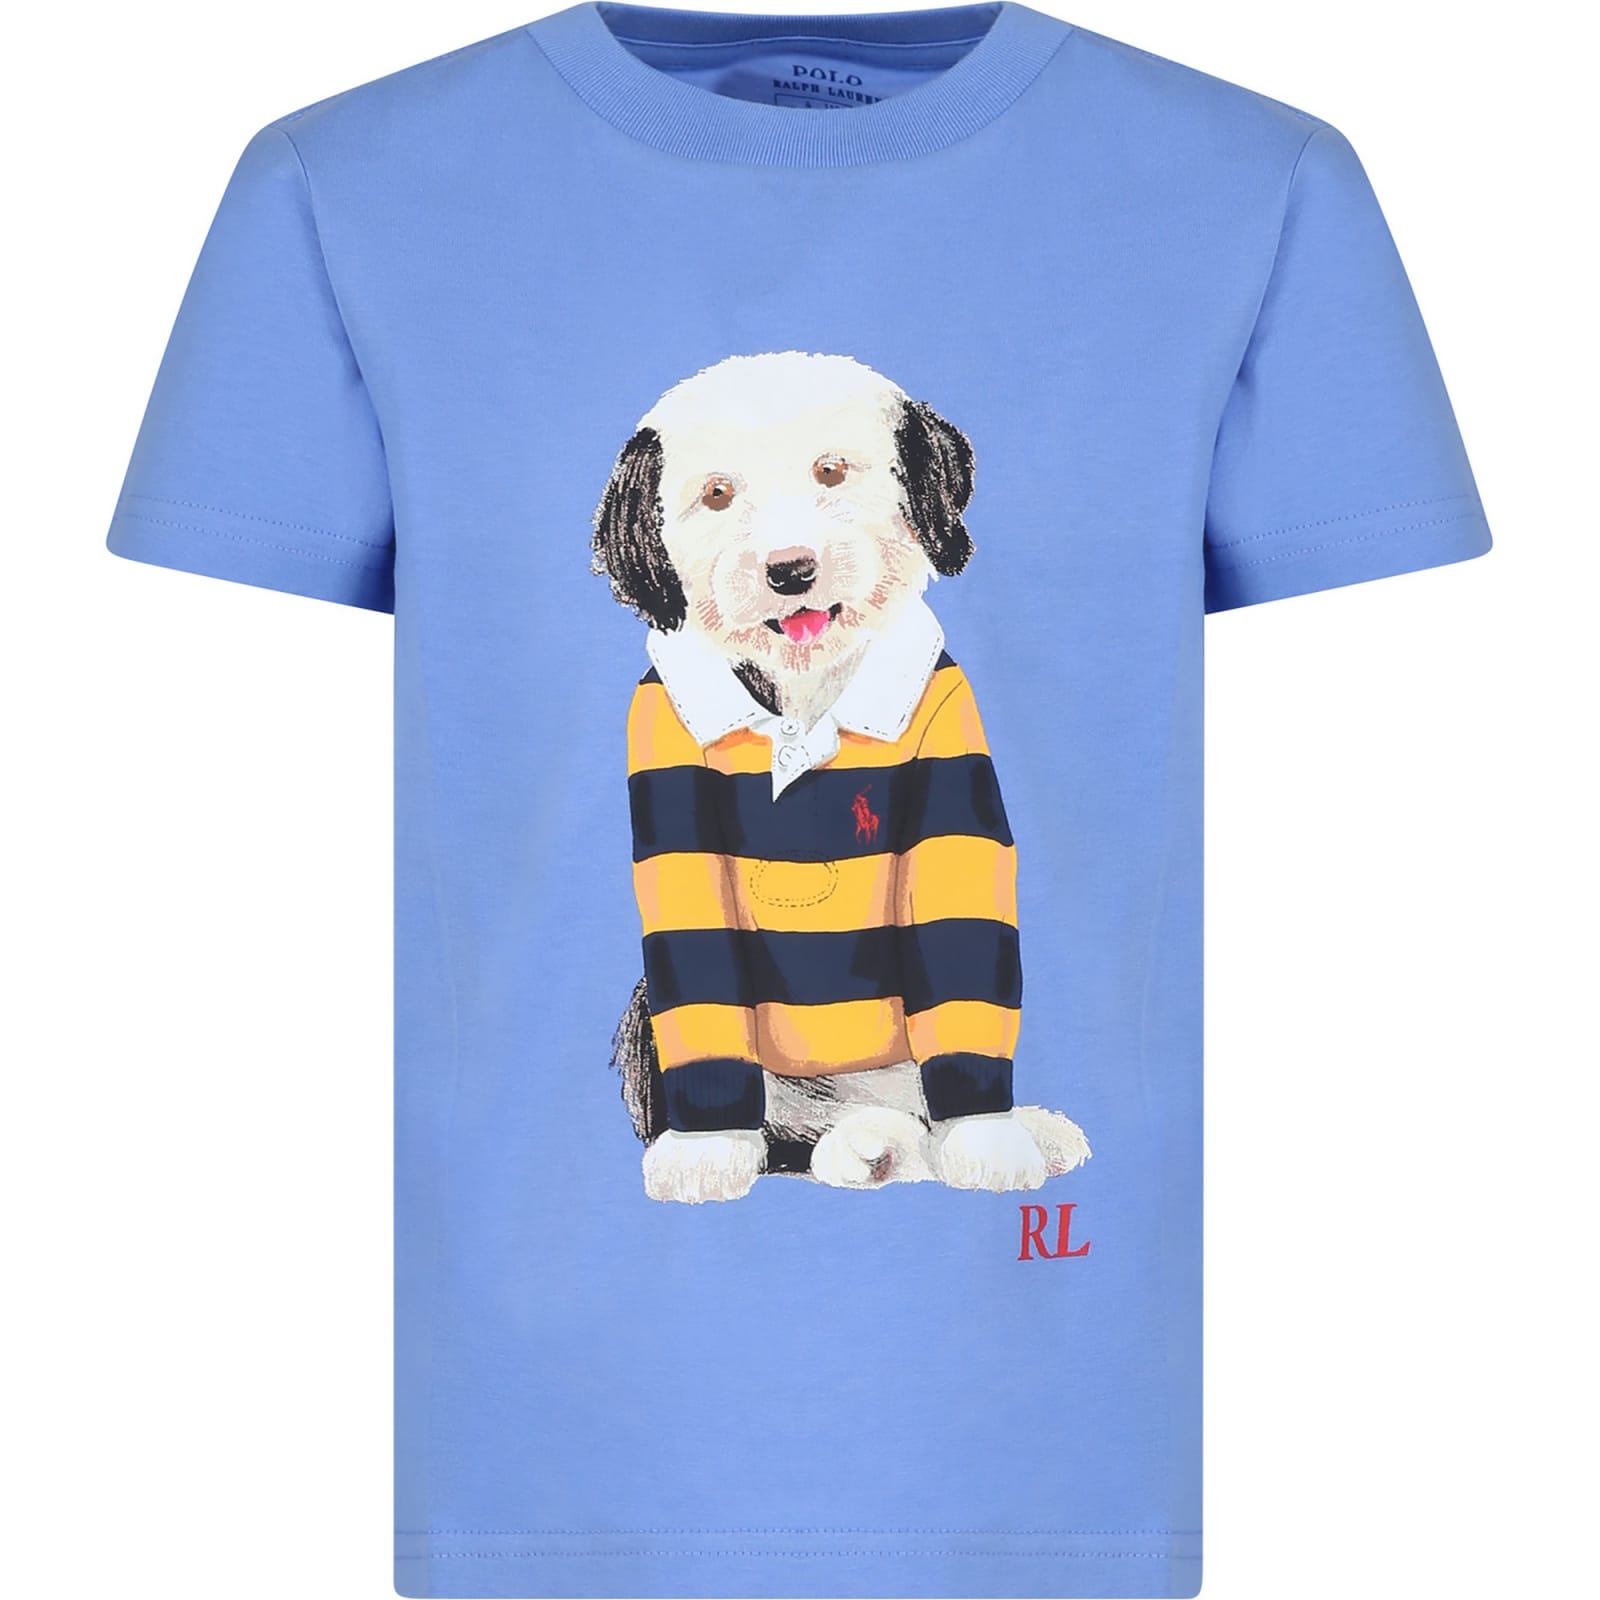 Ralph Lauren Kids' Light Blue T-shirt For Boy With Dog Print